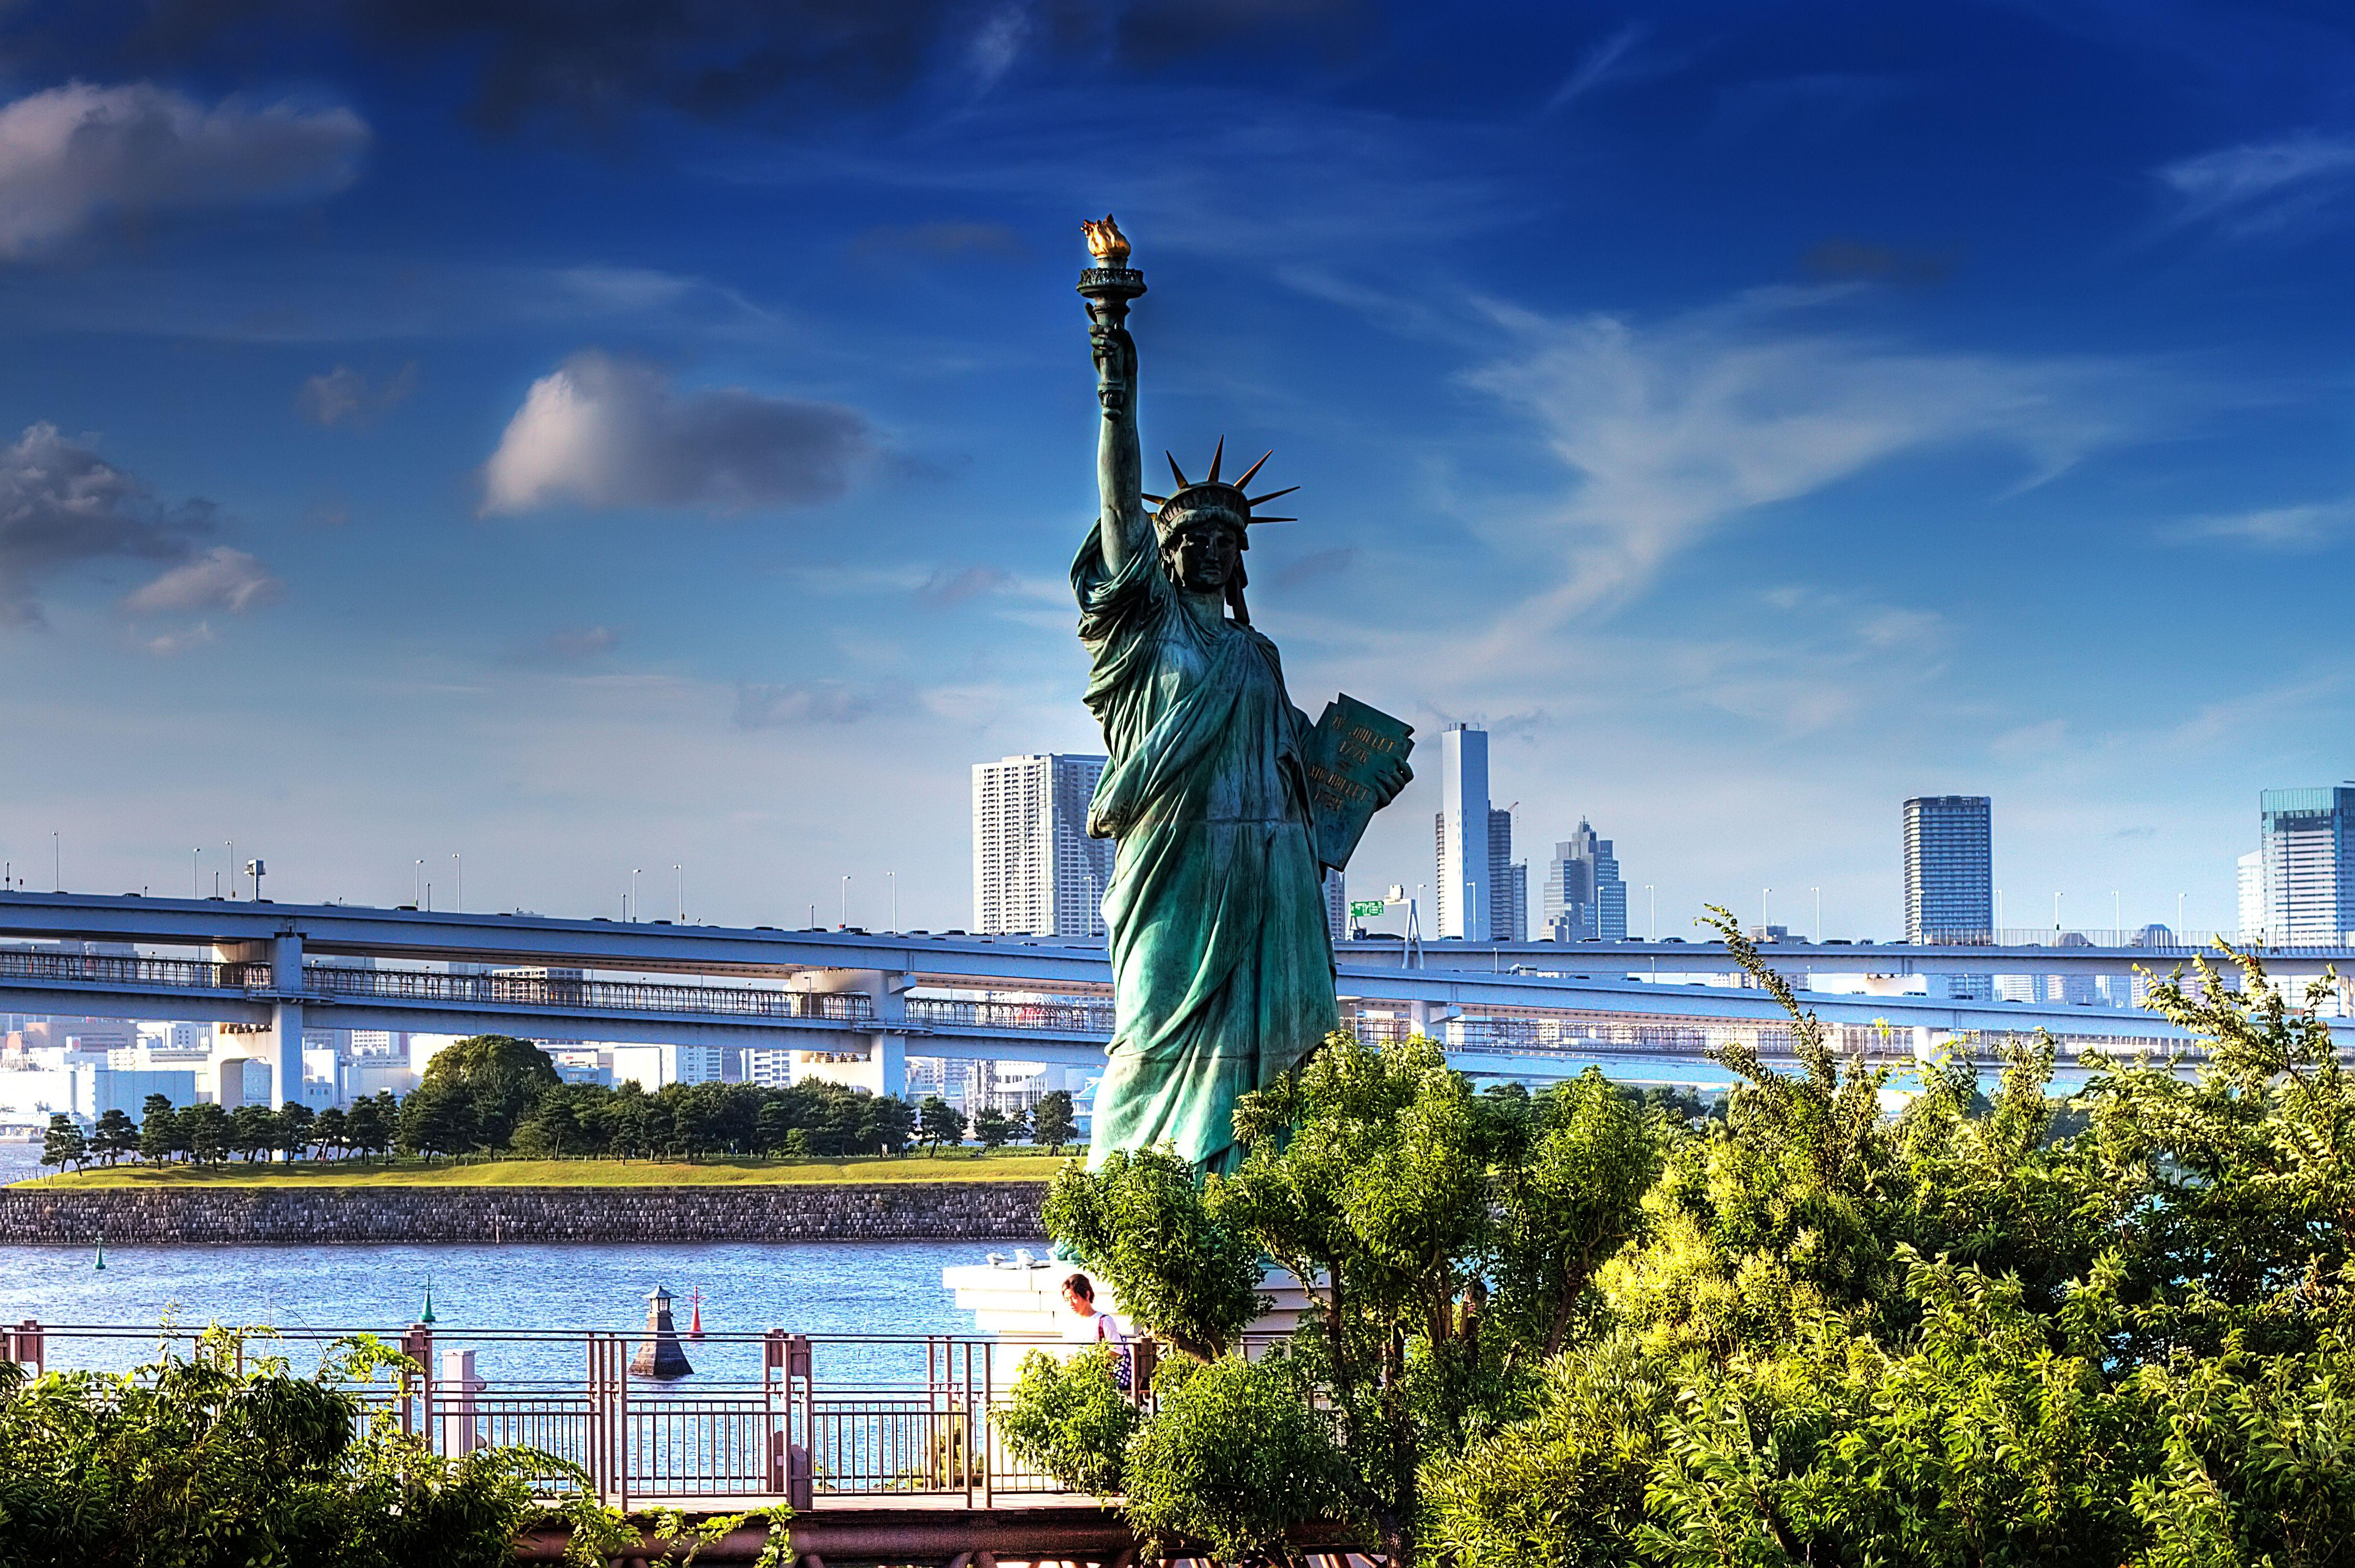 Чем известна страна сша. Статуя свободы Нью-Йорк. Нью-Йорк бстатуясвободы. Нью Йорк стадия свободы. НЬЮЙ РРК статуя свободы.